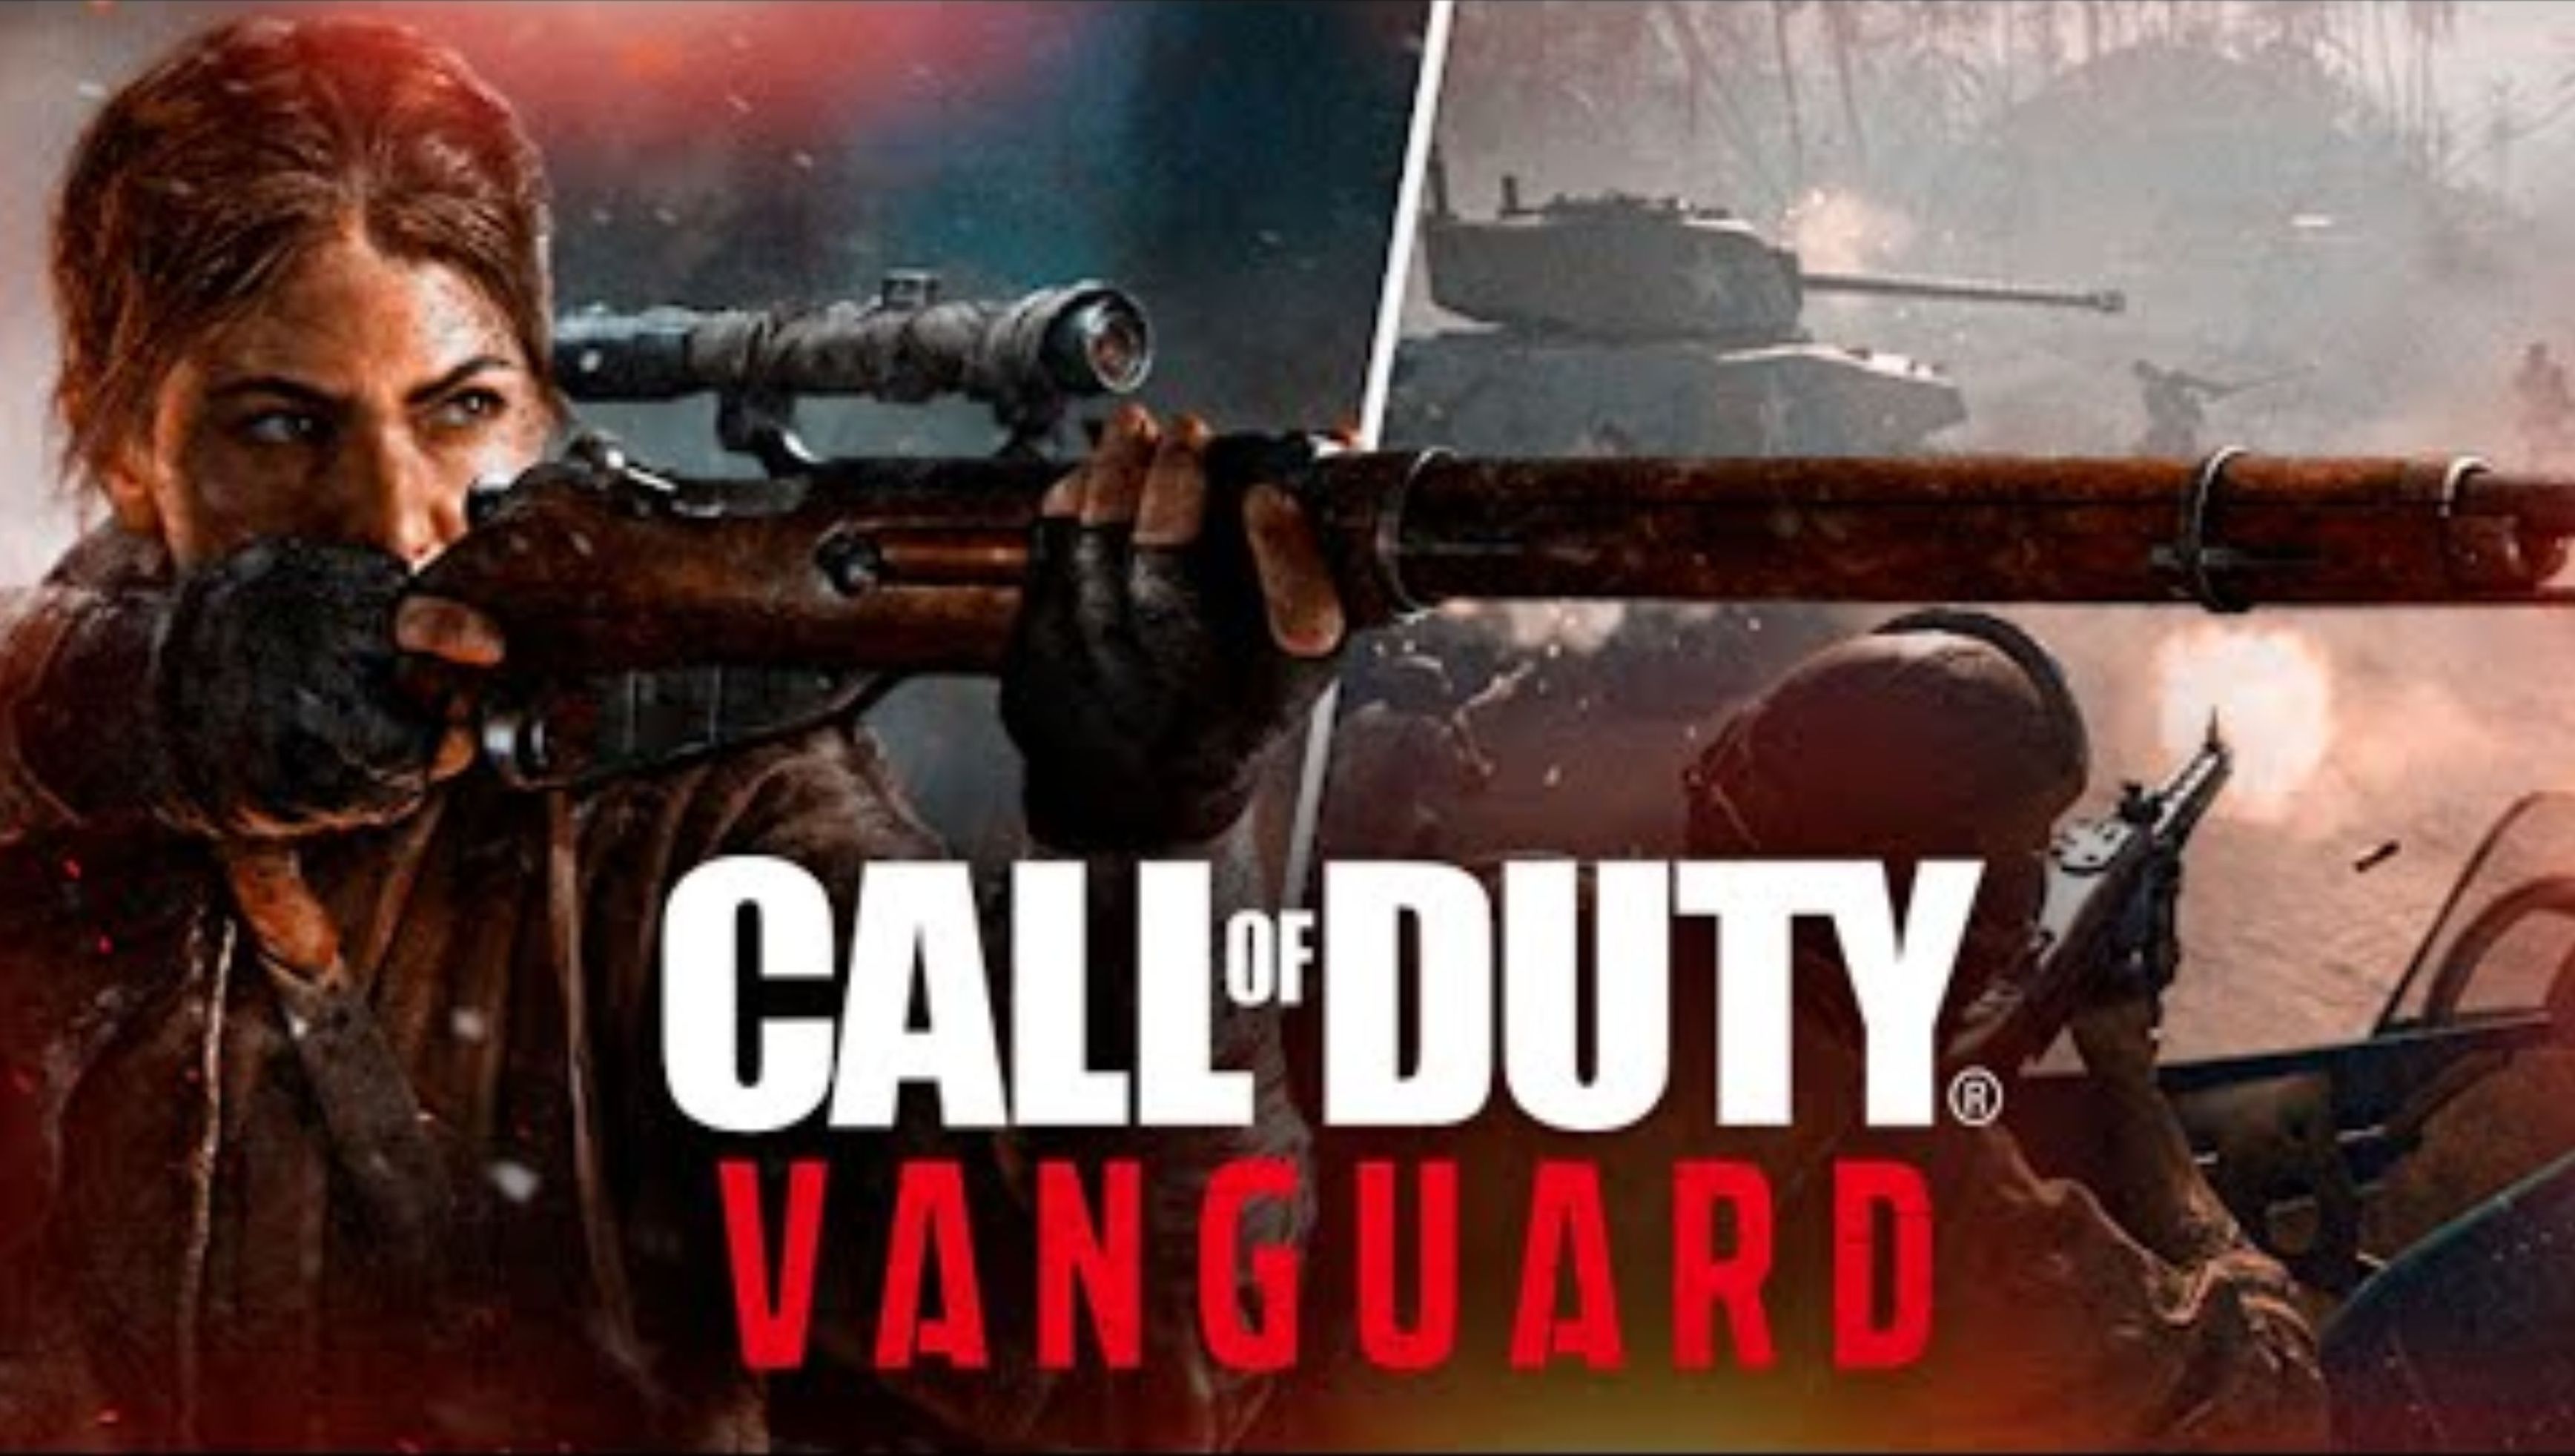 ОНА ВЫШЛА! ПРОВАЛ ИЛИ ГОДНОТА_ ● Call of Duty_ Vanguard #1